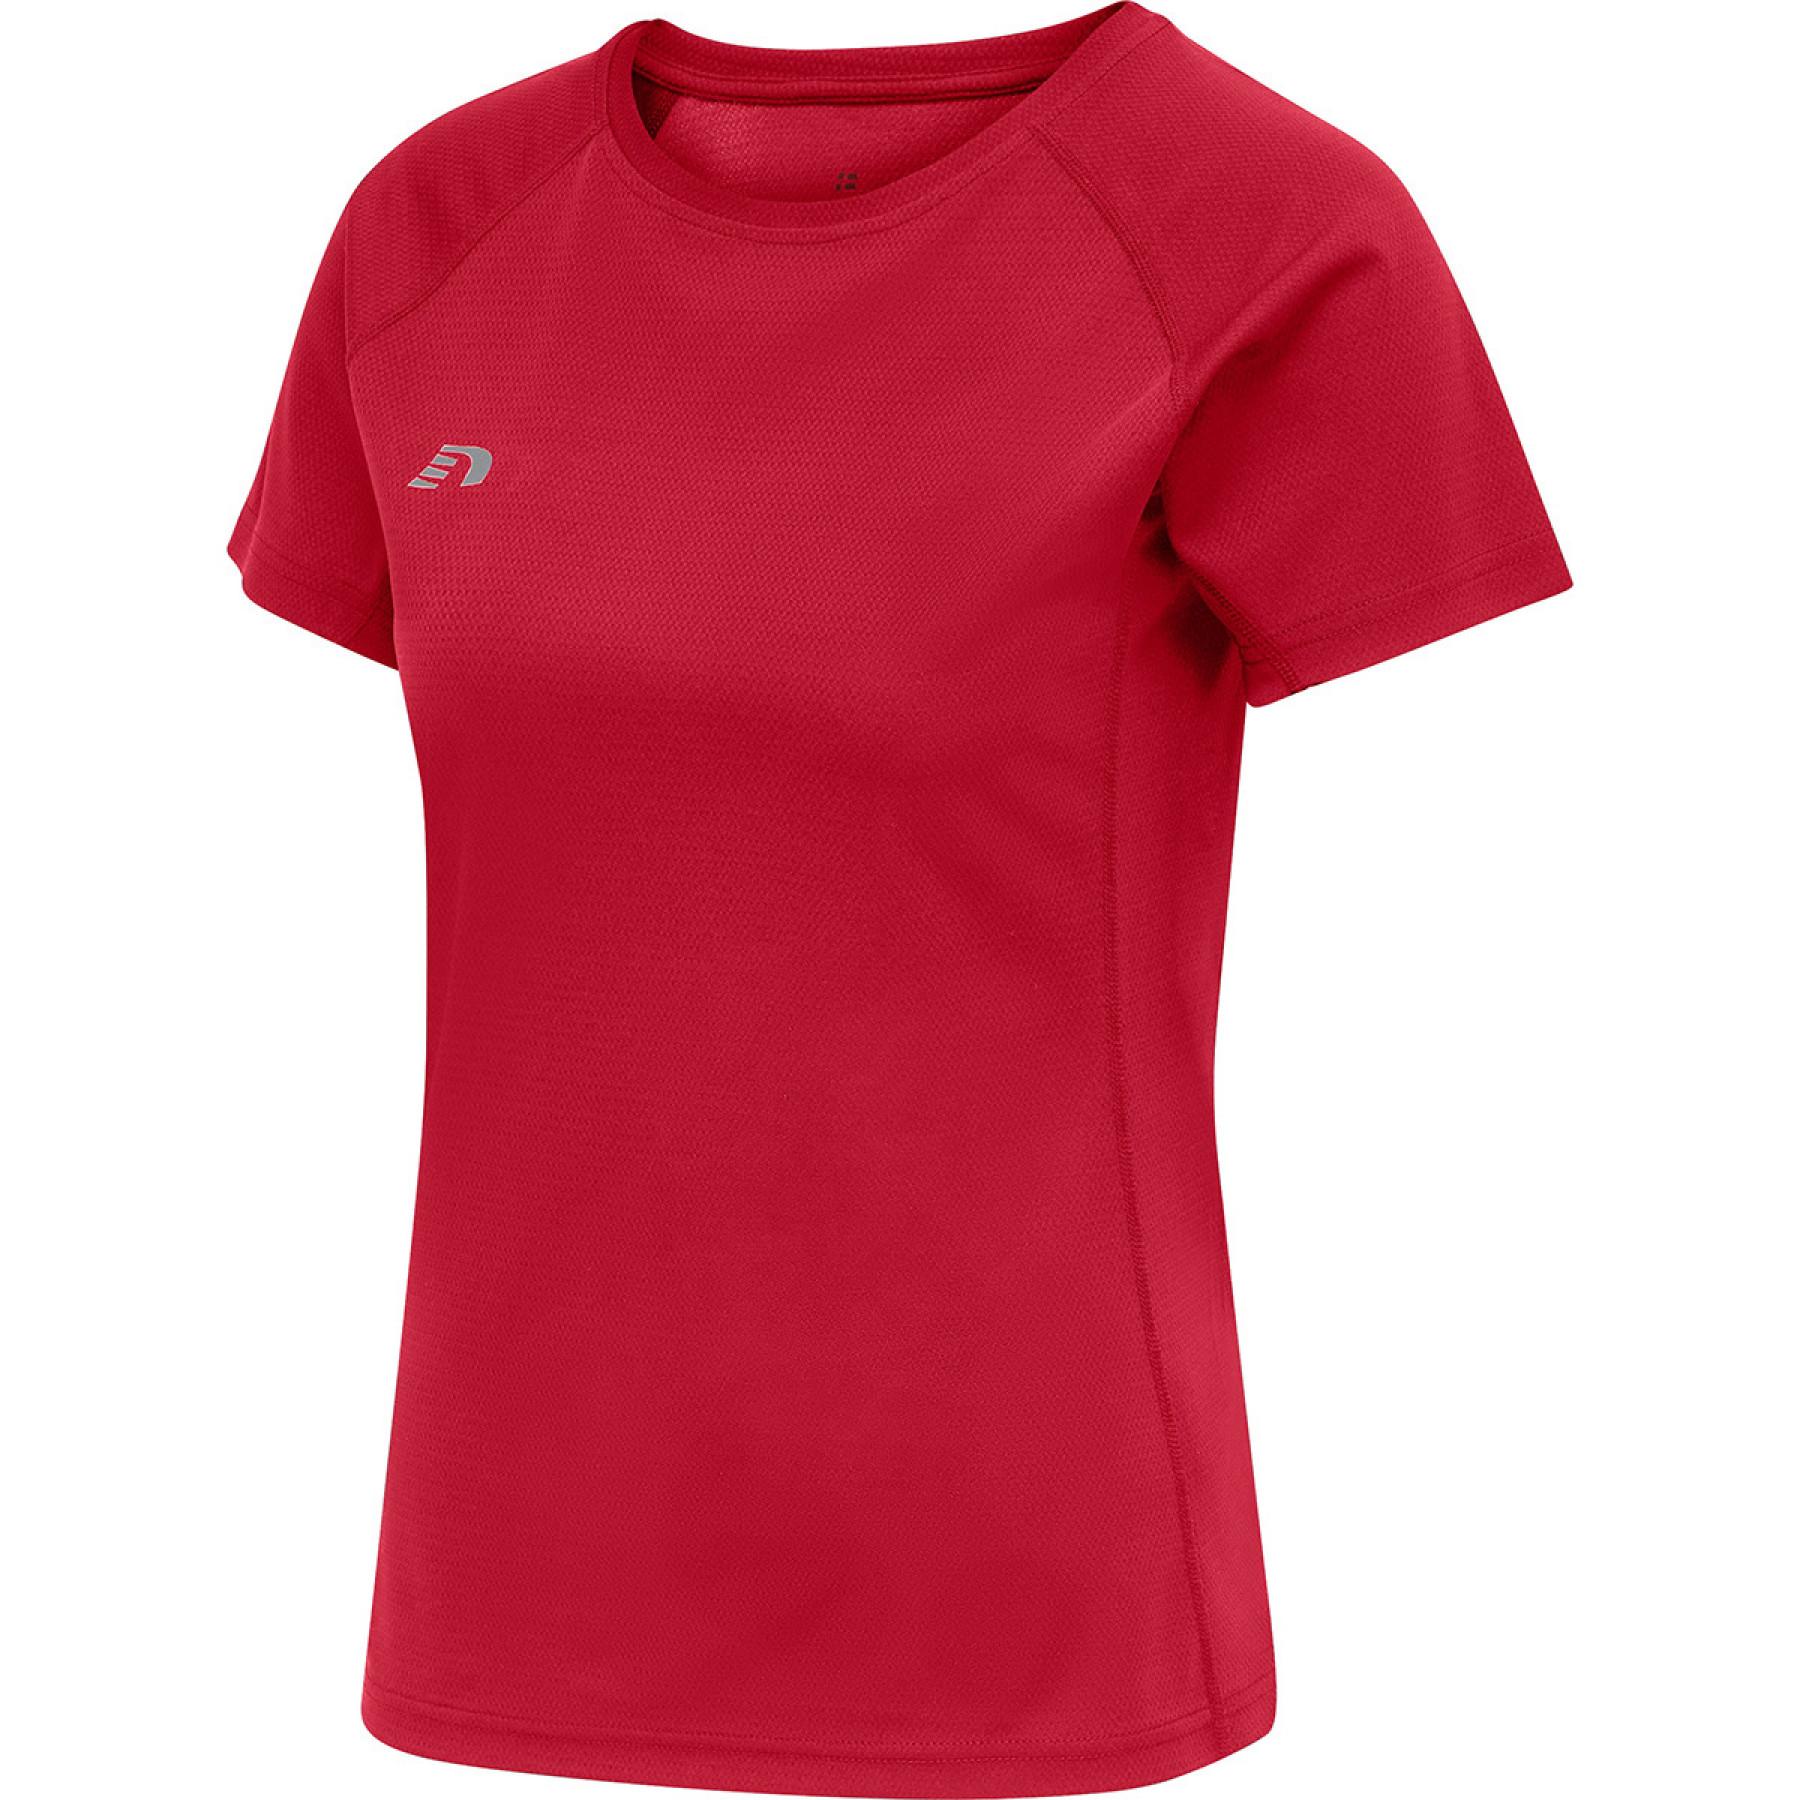 Women's T-shirt Newline core running